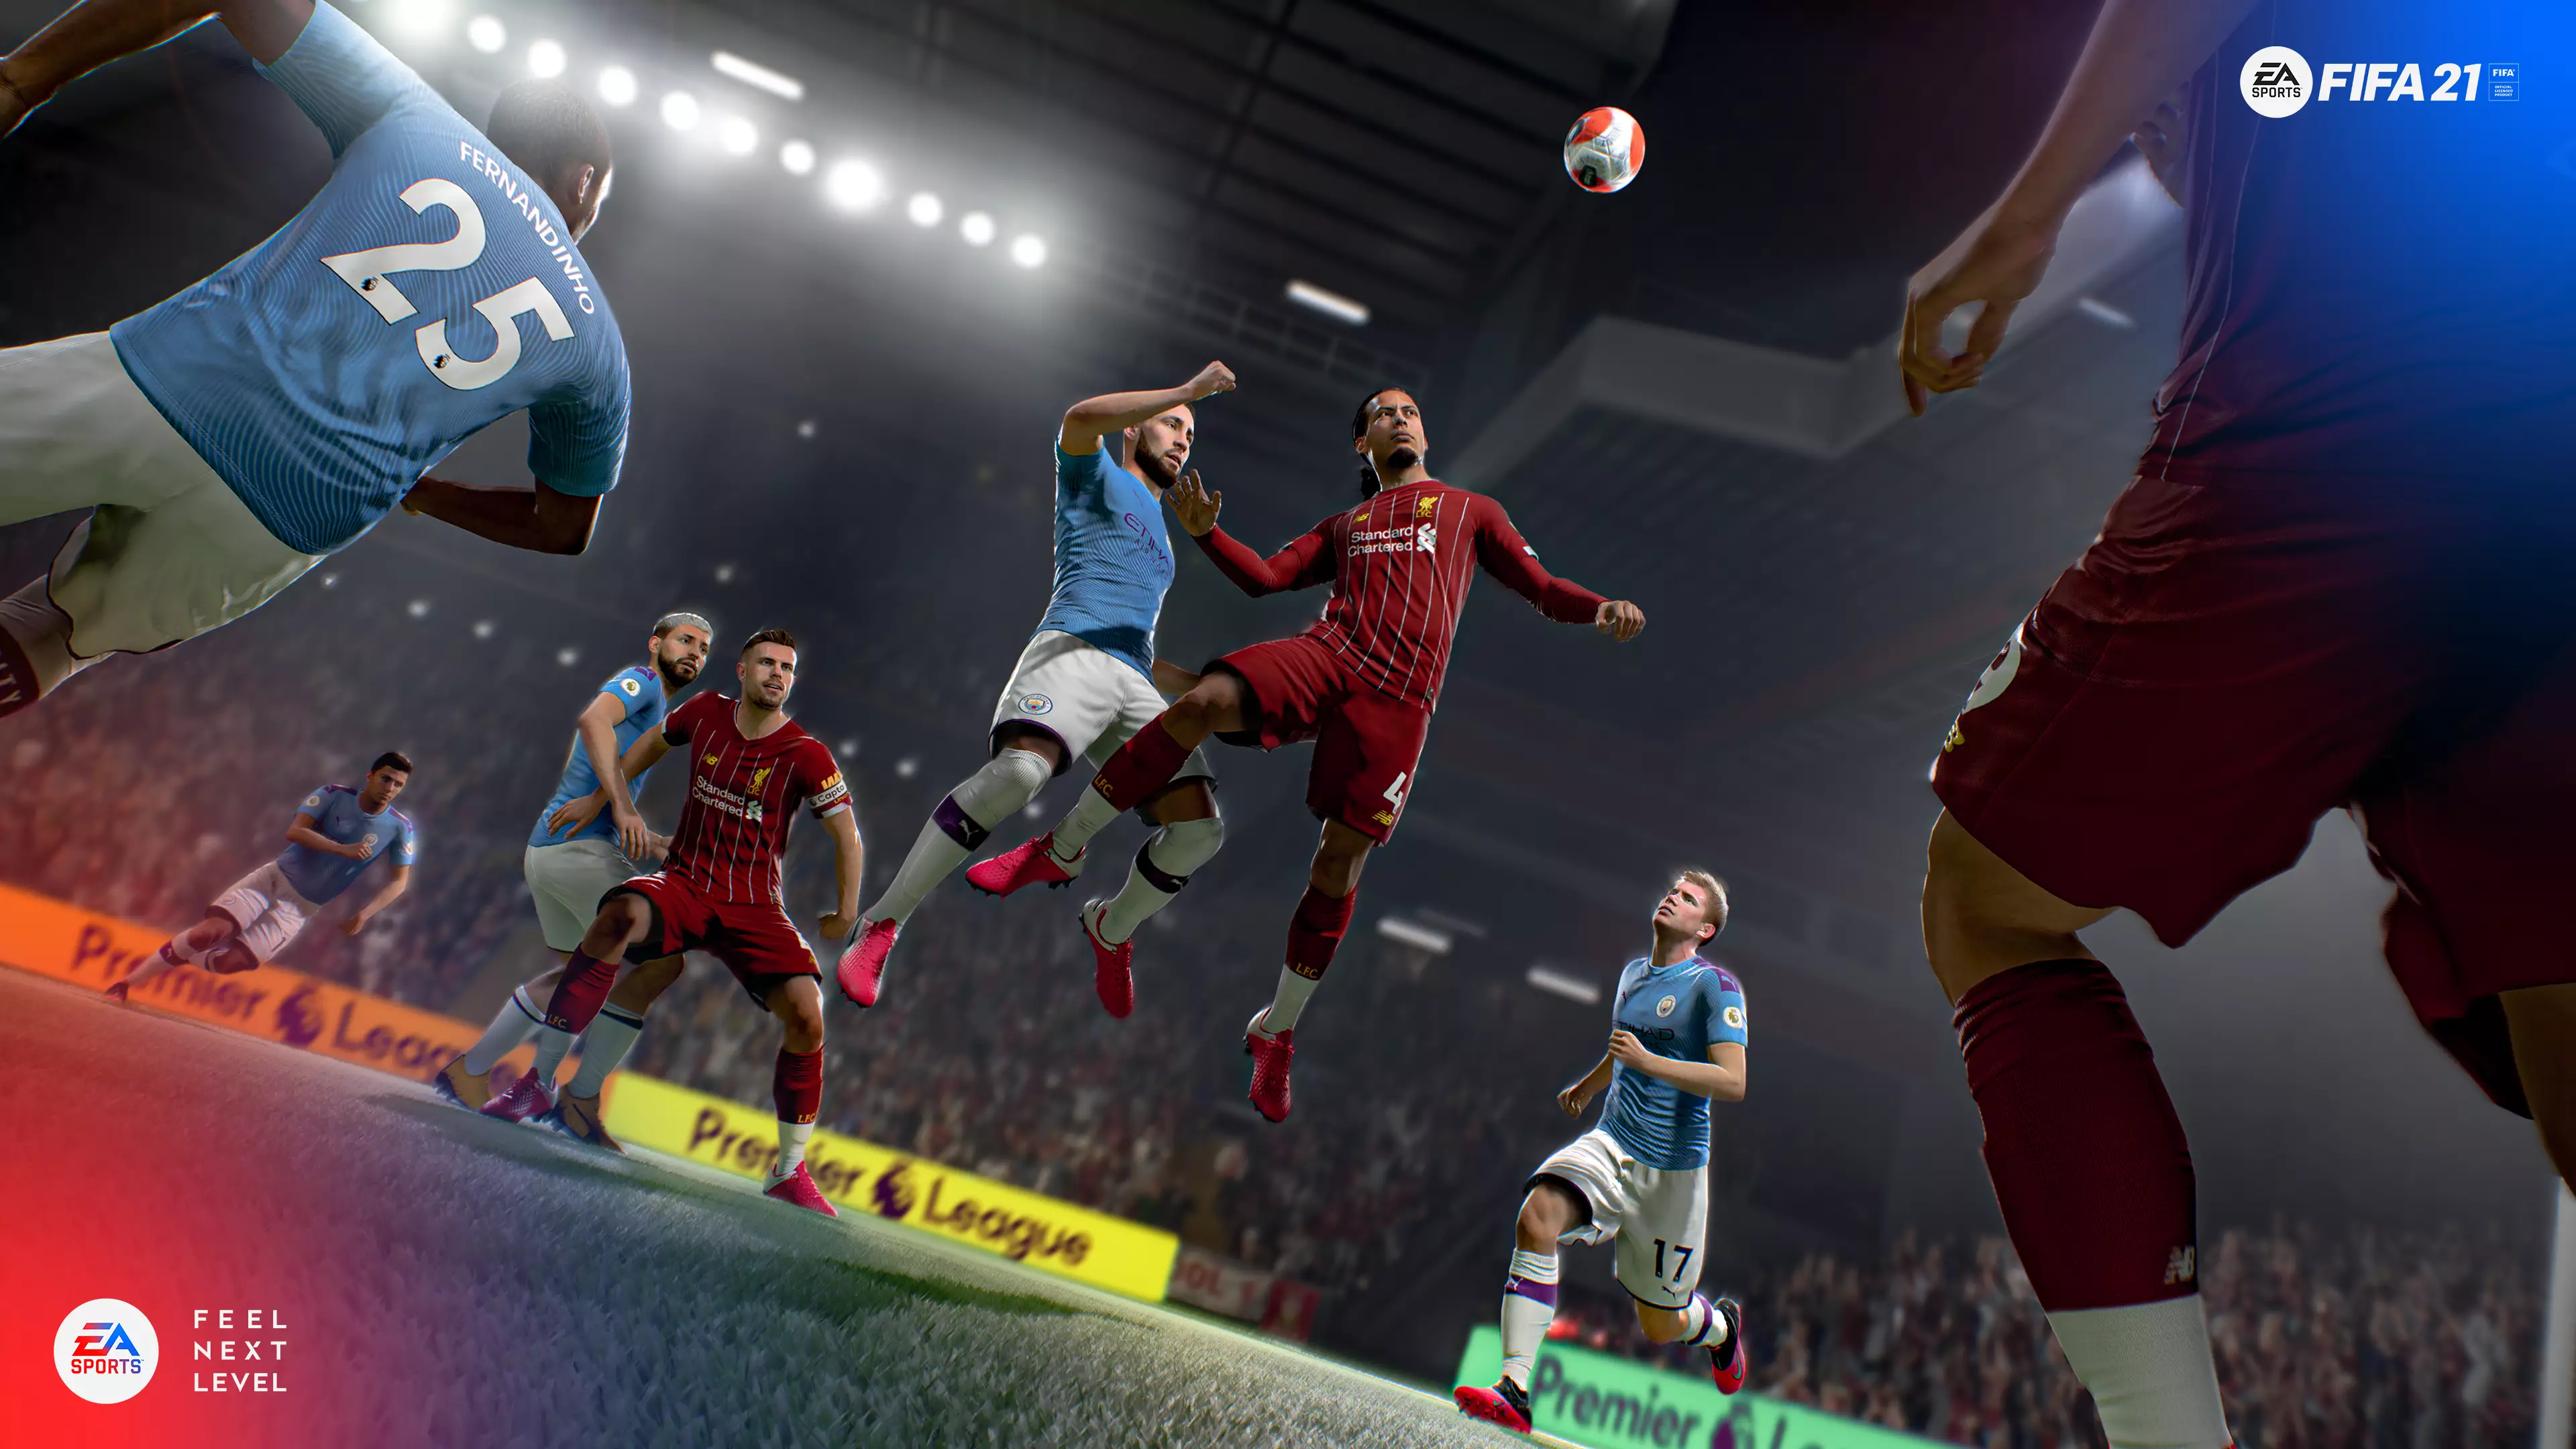 EA's FIFA 21